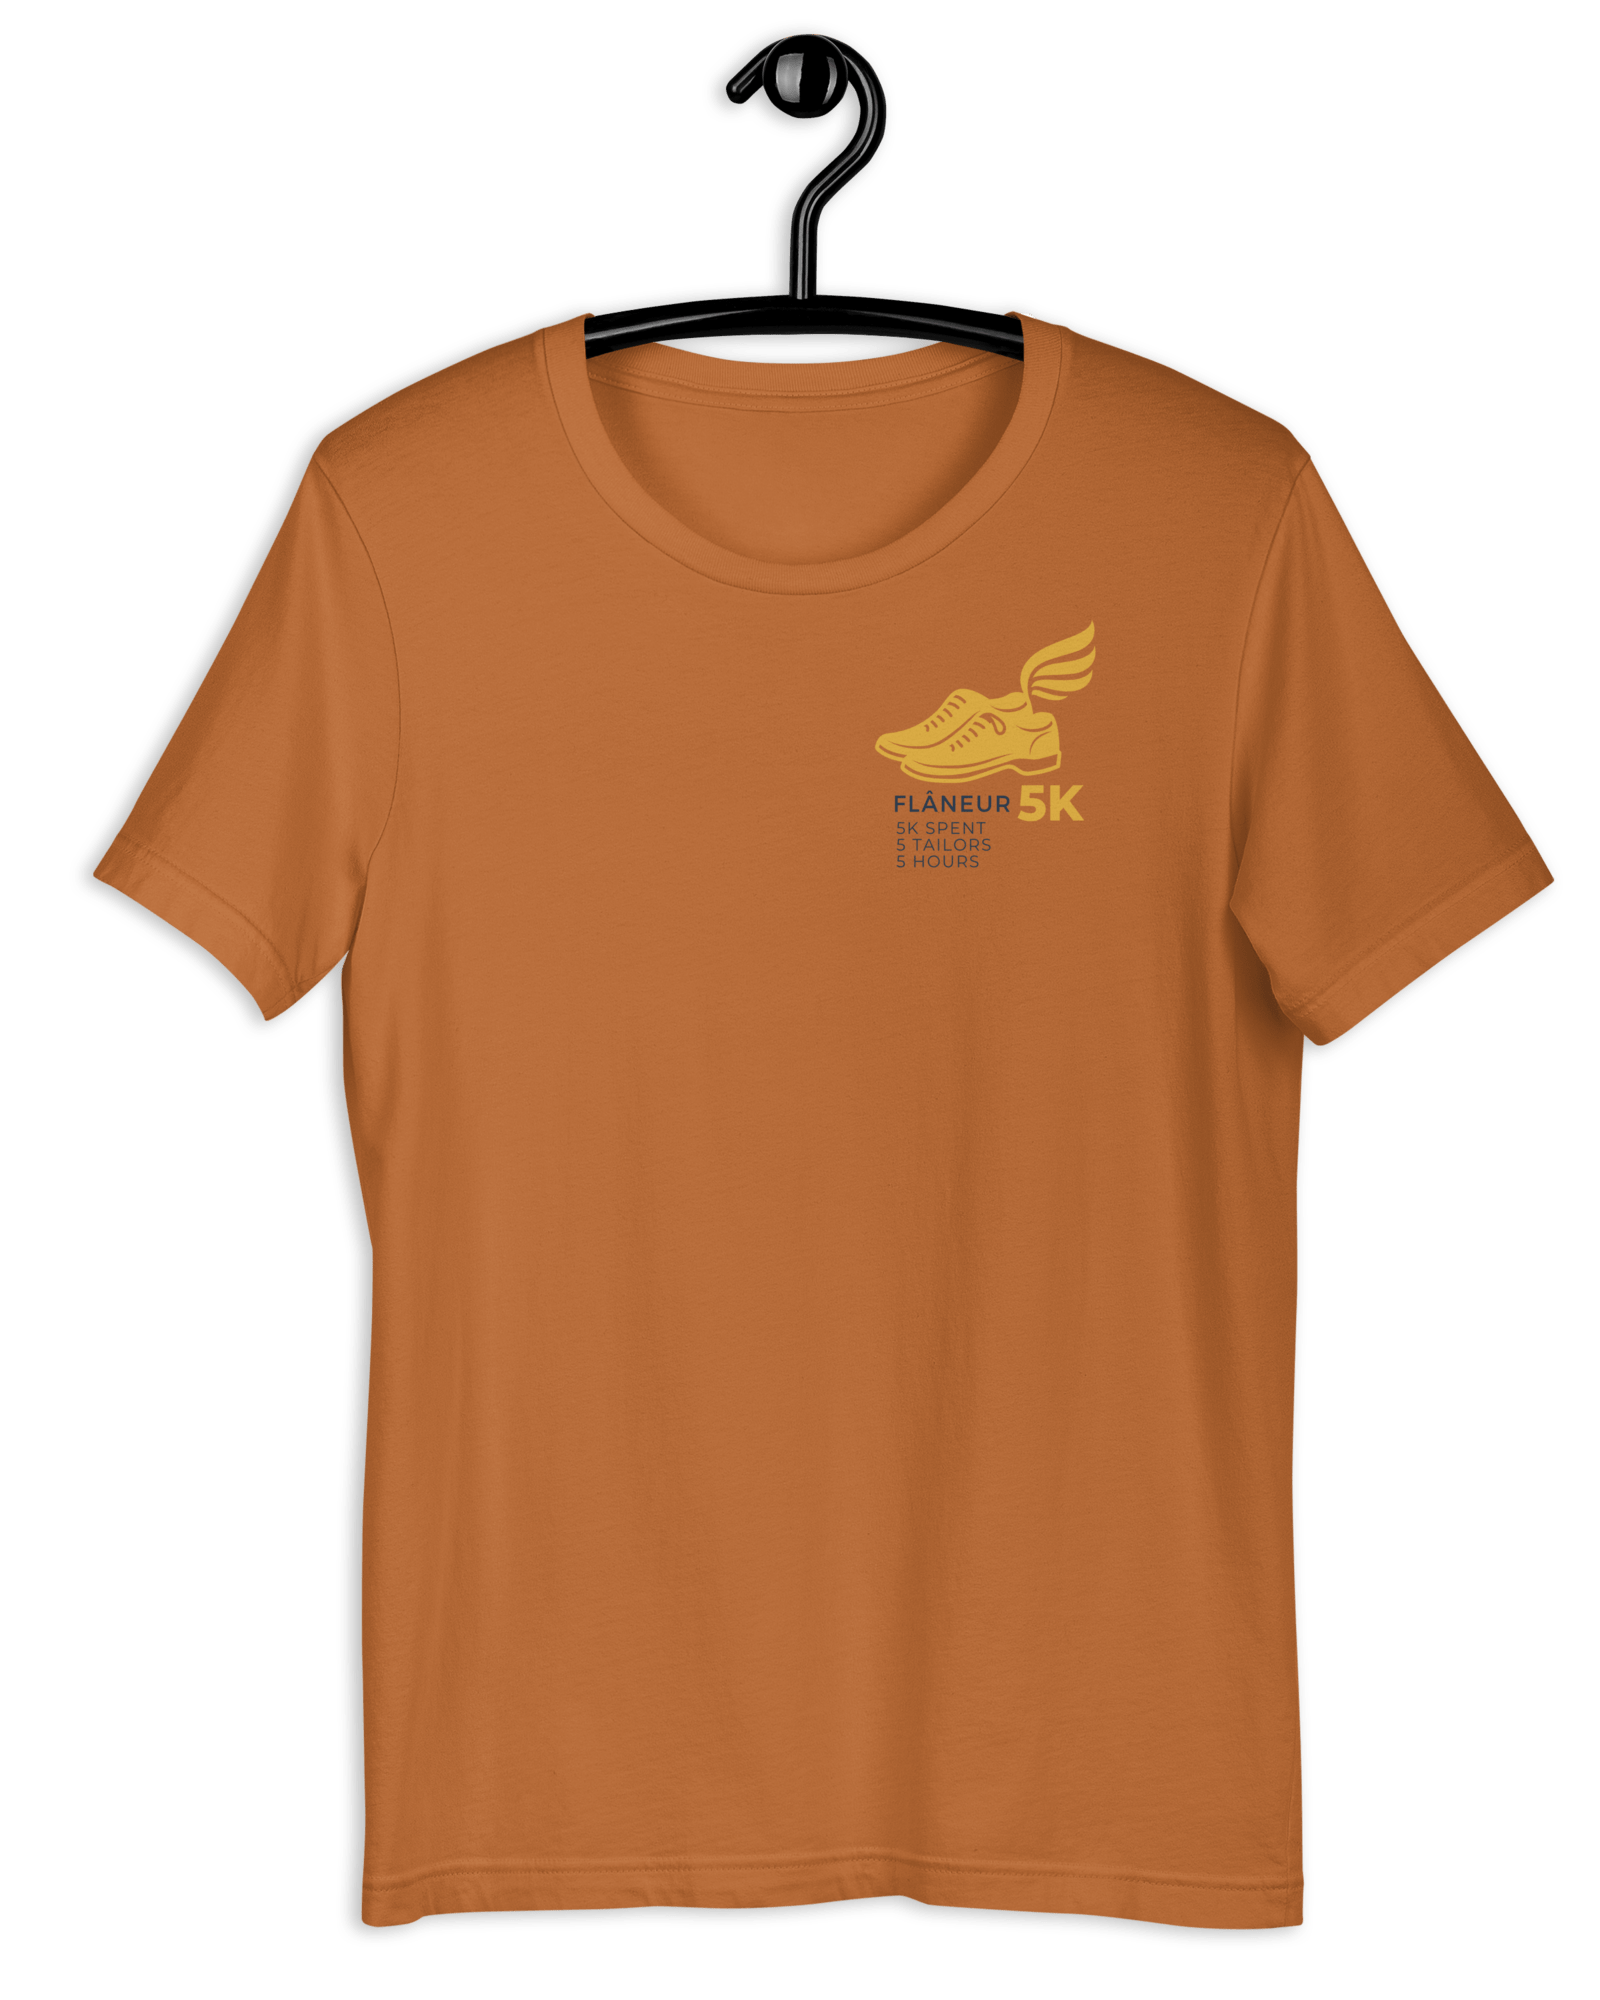 Flaneur 5K T-shirt Toast / S Shirts & Tops Jolly & Goode